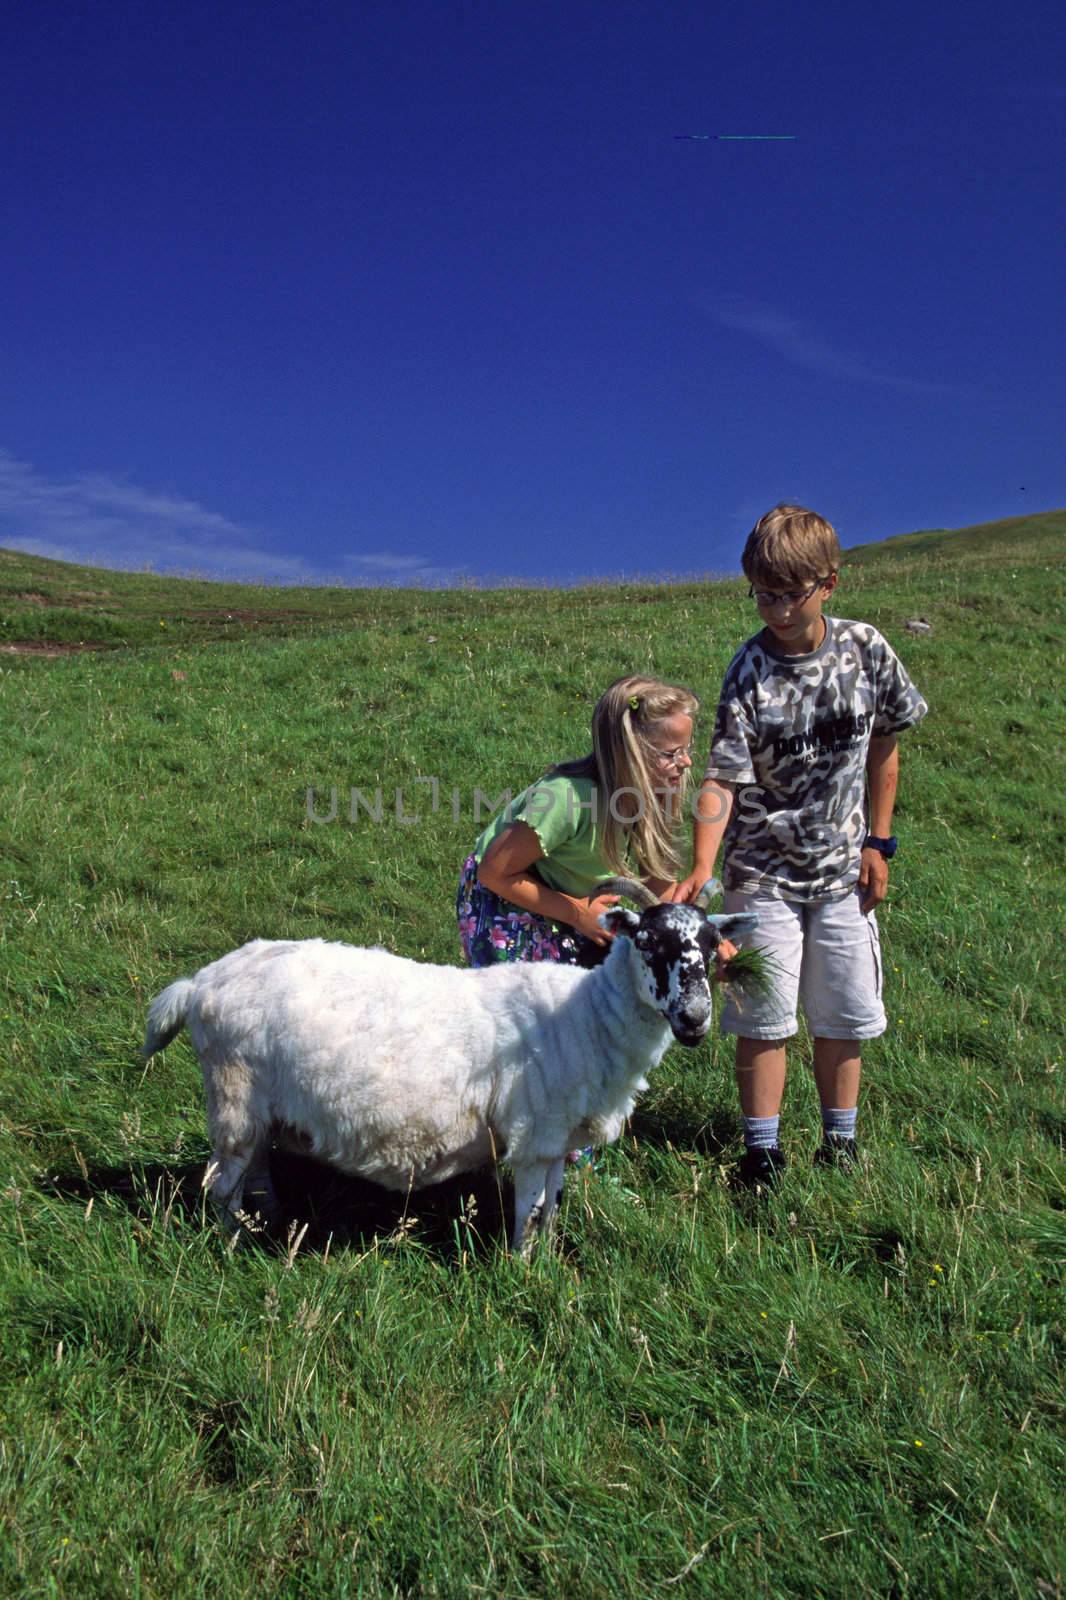 Children with sheep in Scotland. Kinder mit Schaf, Skye, Schottland, 7 Jahre, 7 years